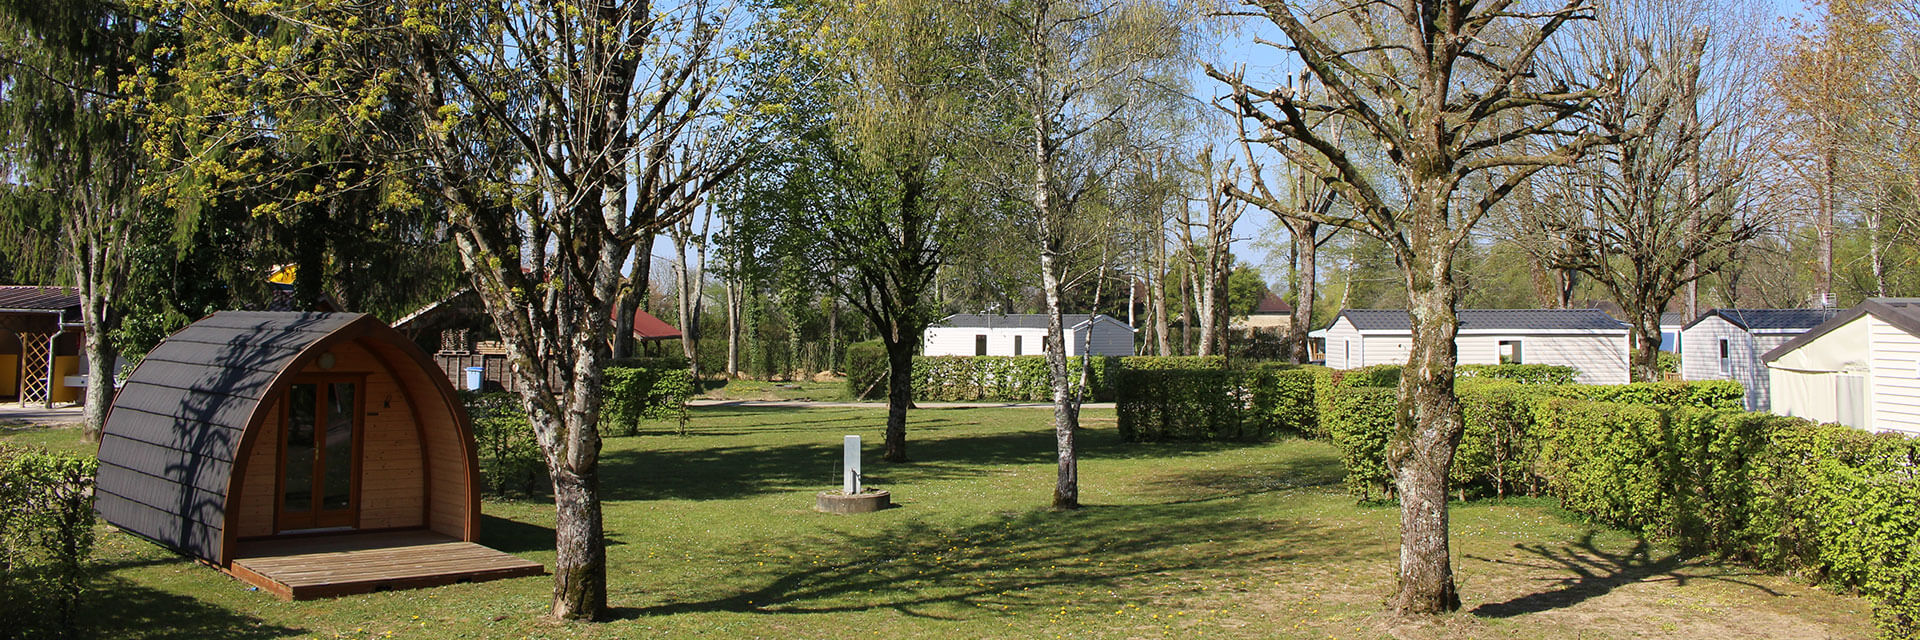 Location mobil-home, chalet et tente dans le Jura